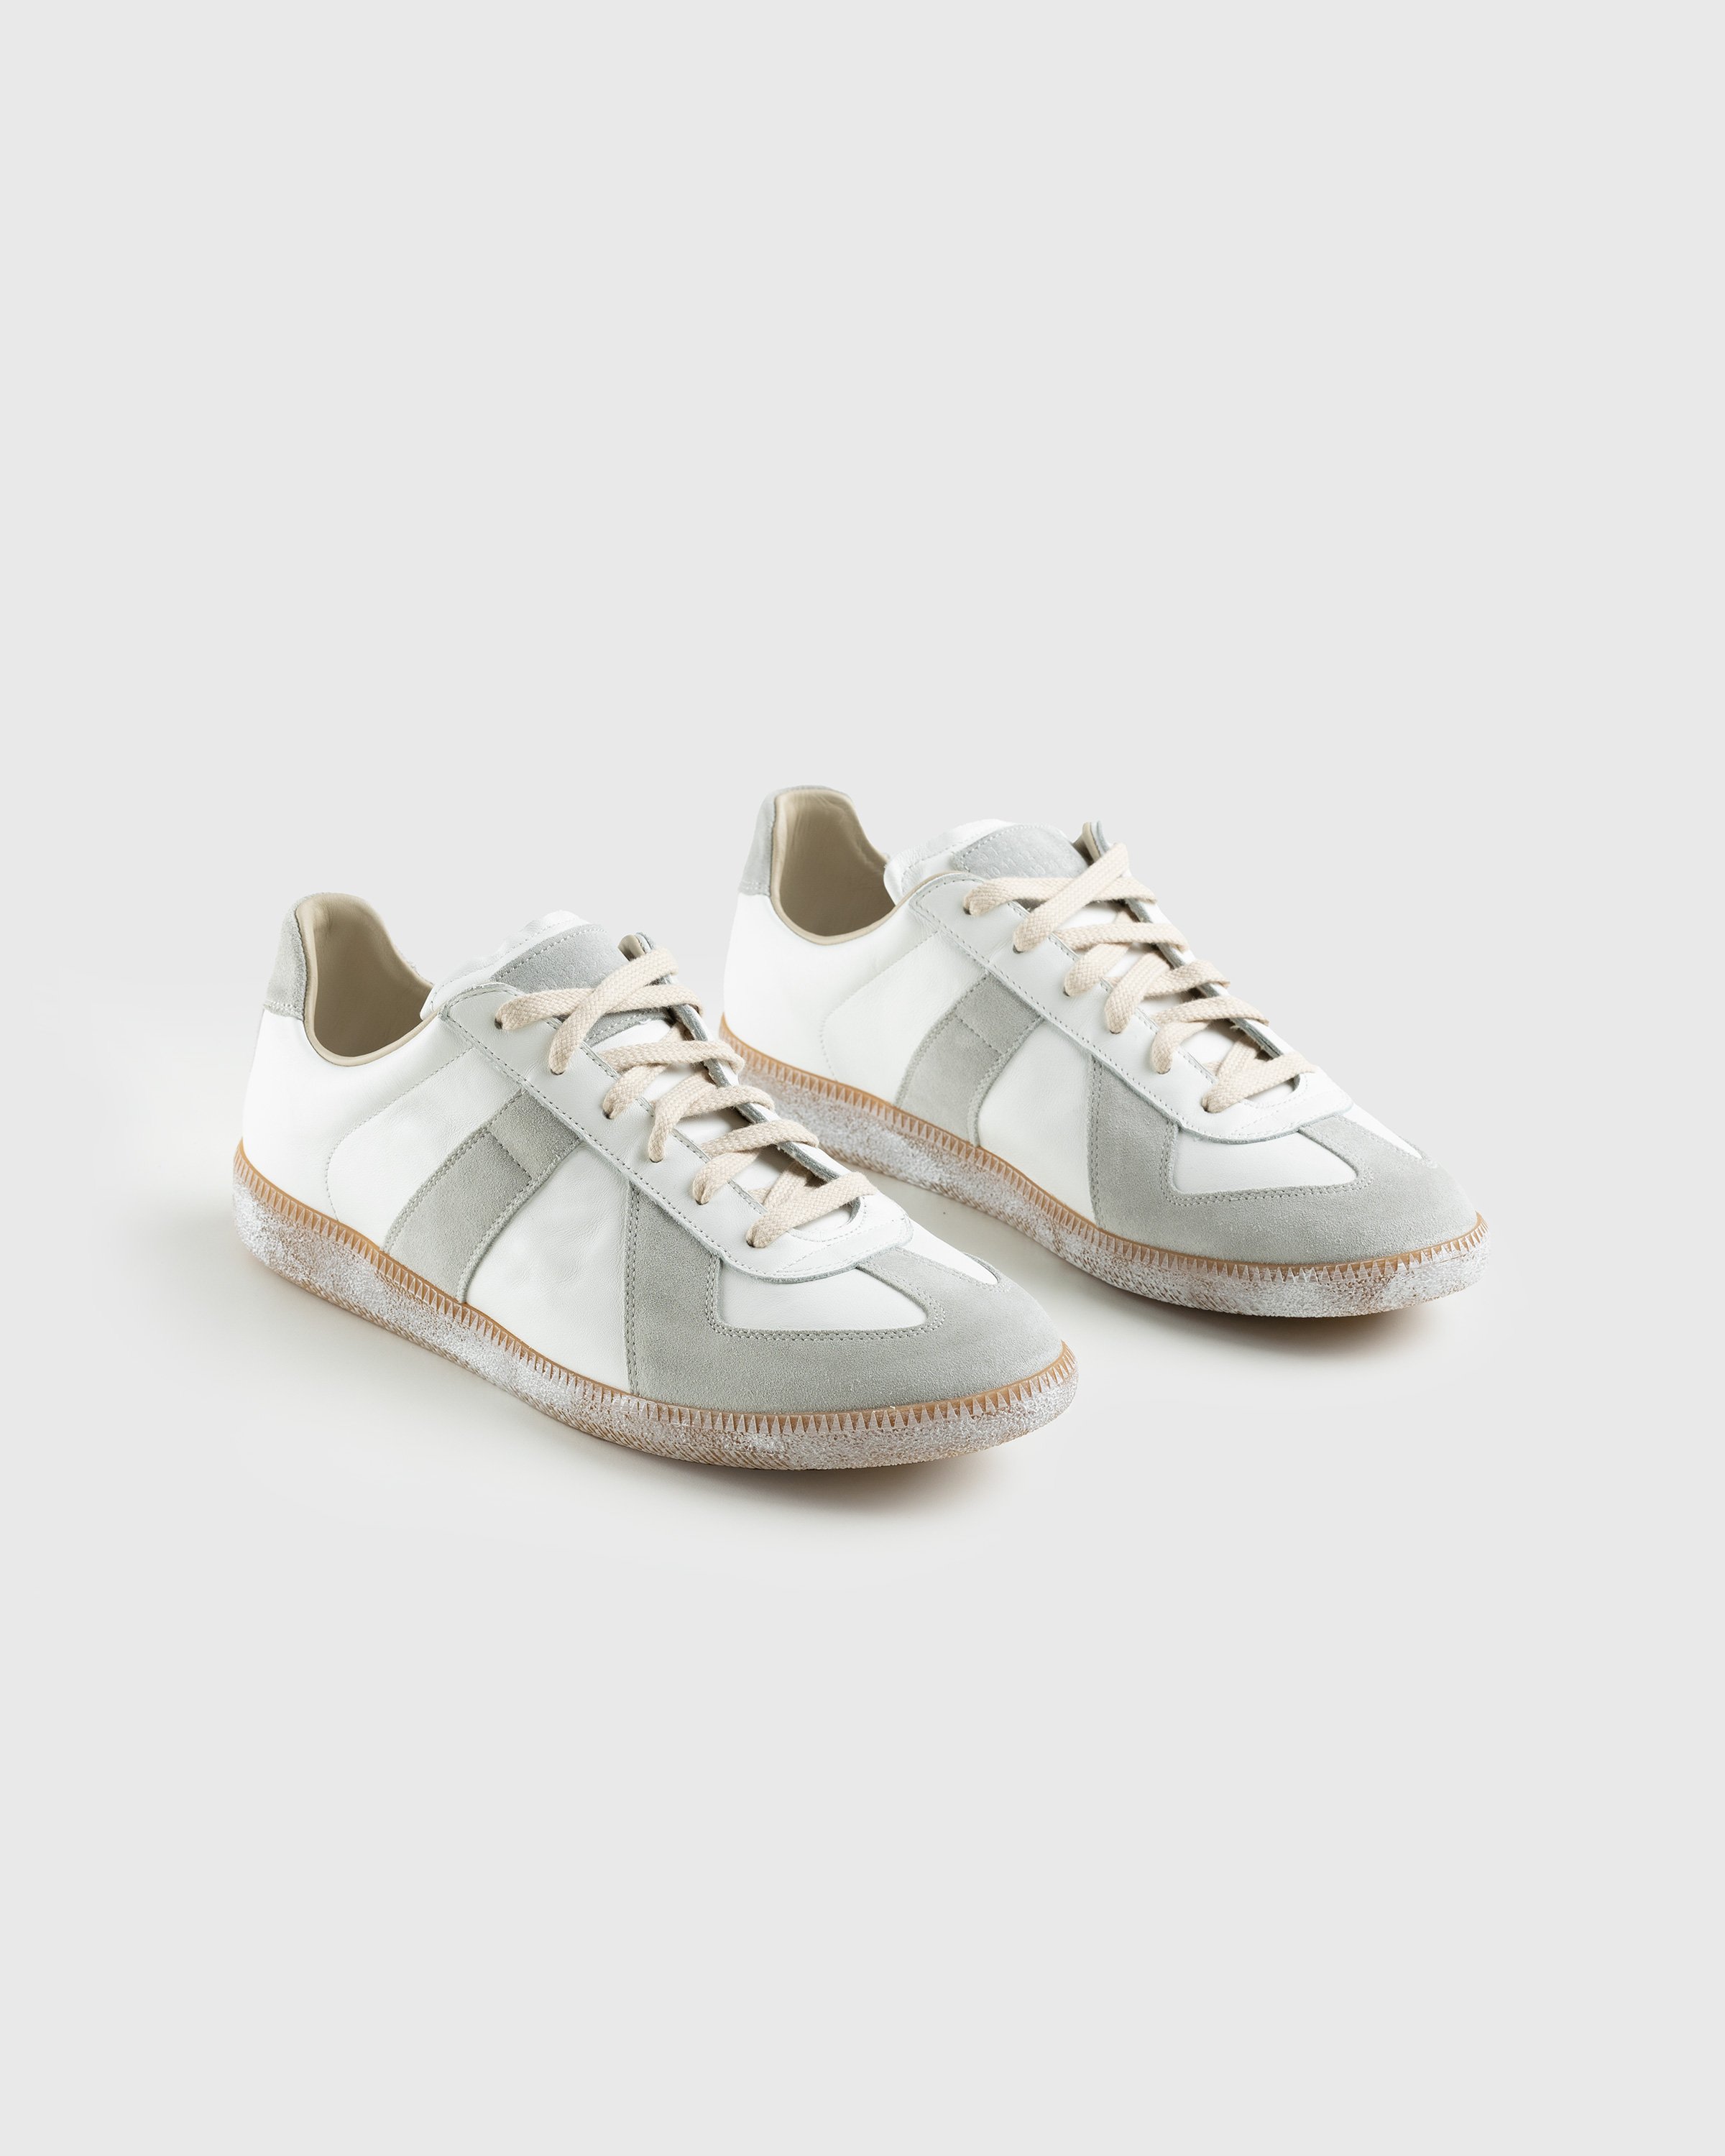 Maison Margiela - Replica Low Top All White - Footwear - Beige - Image 3